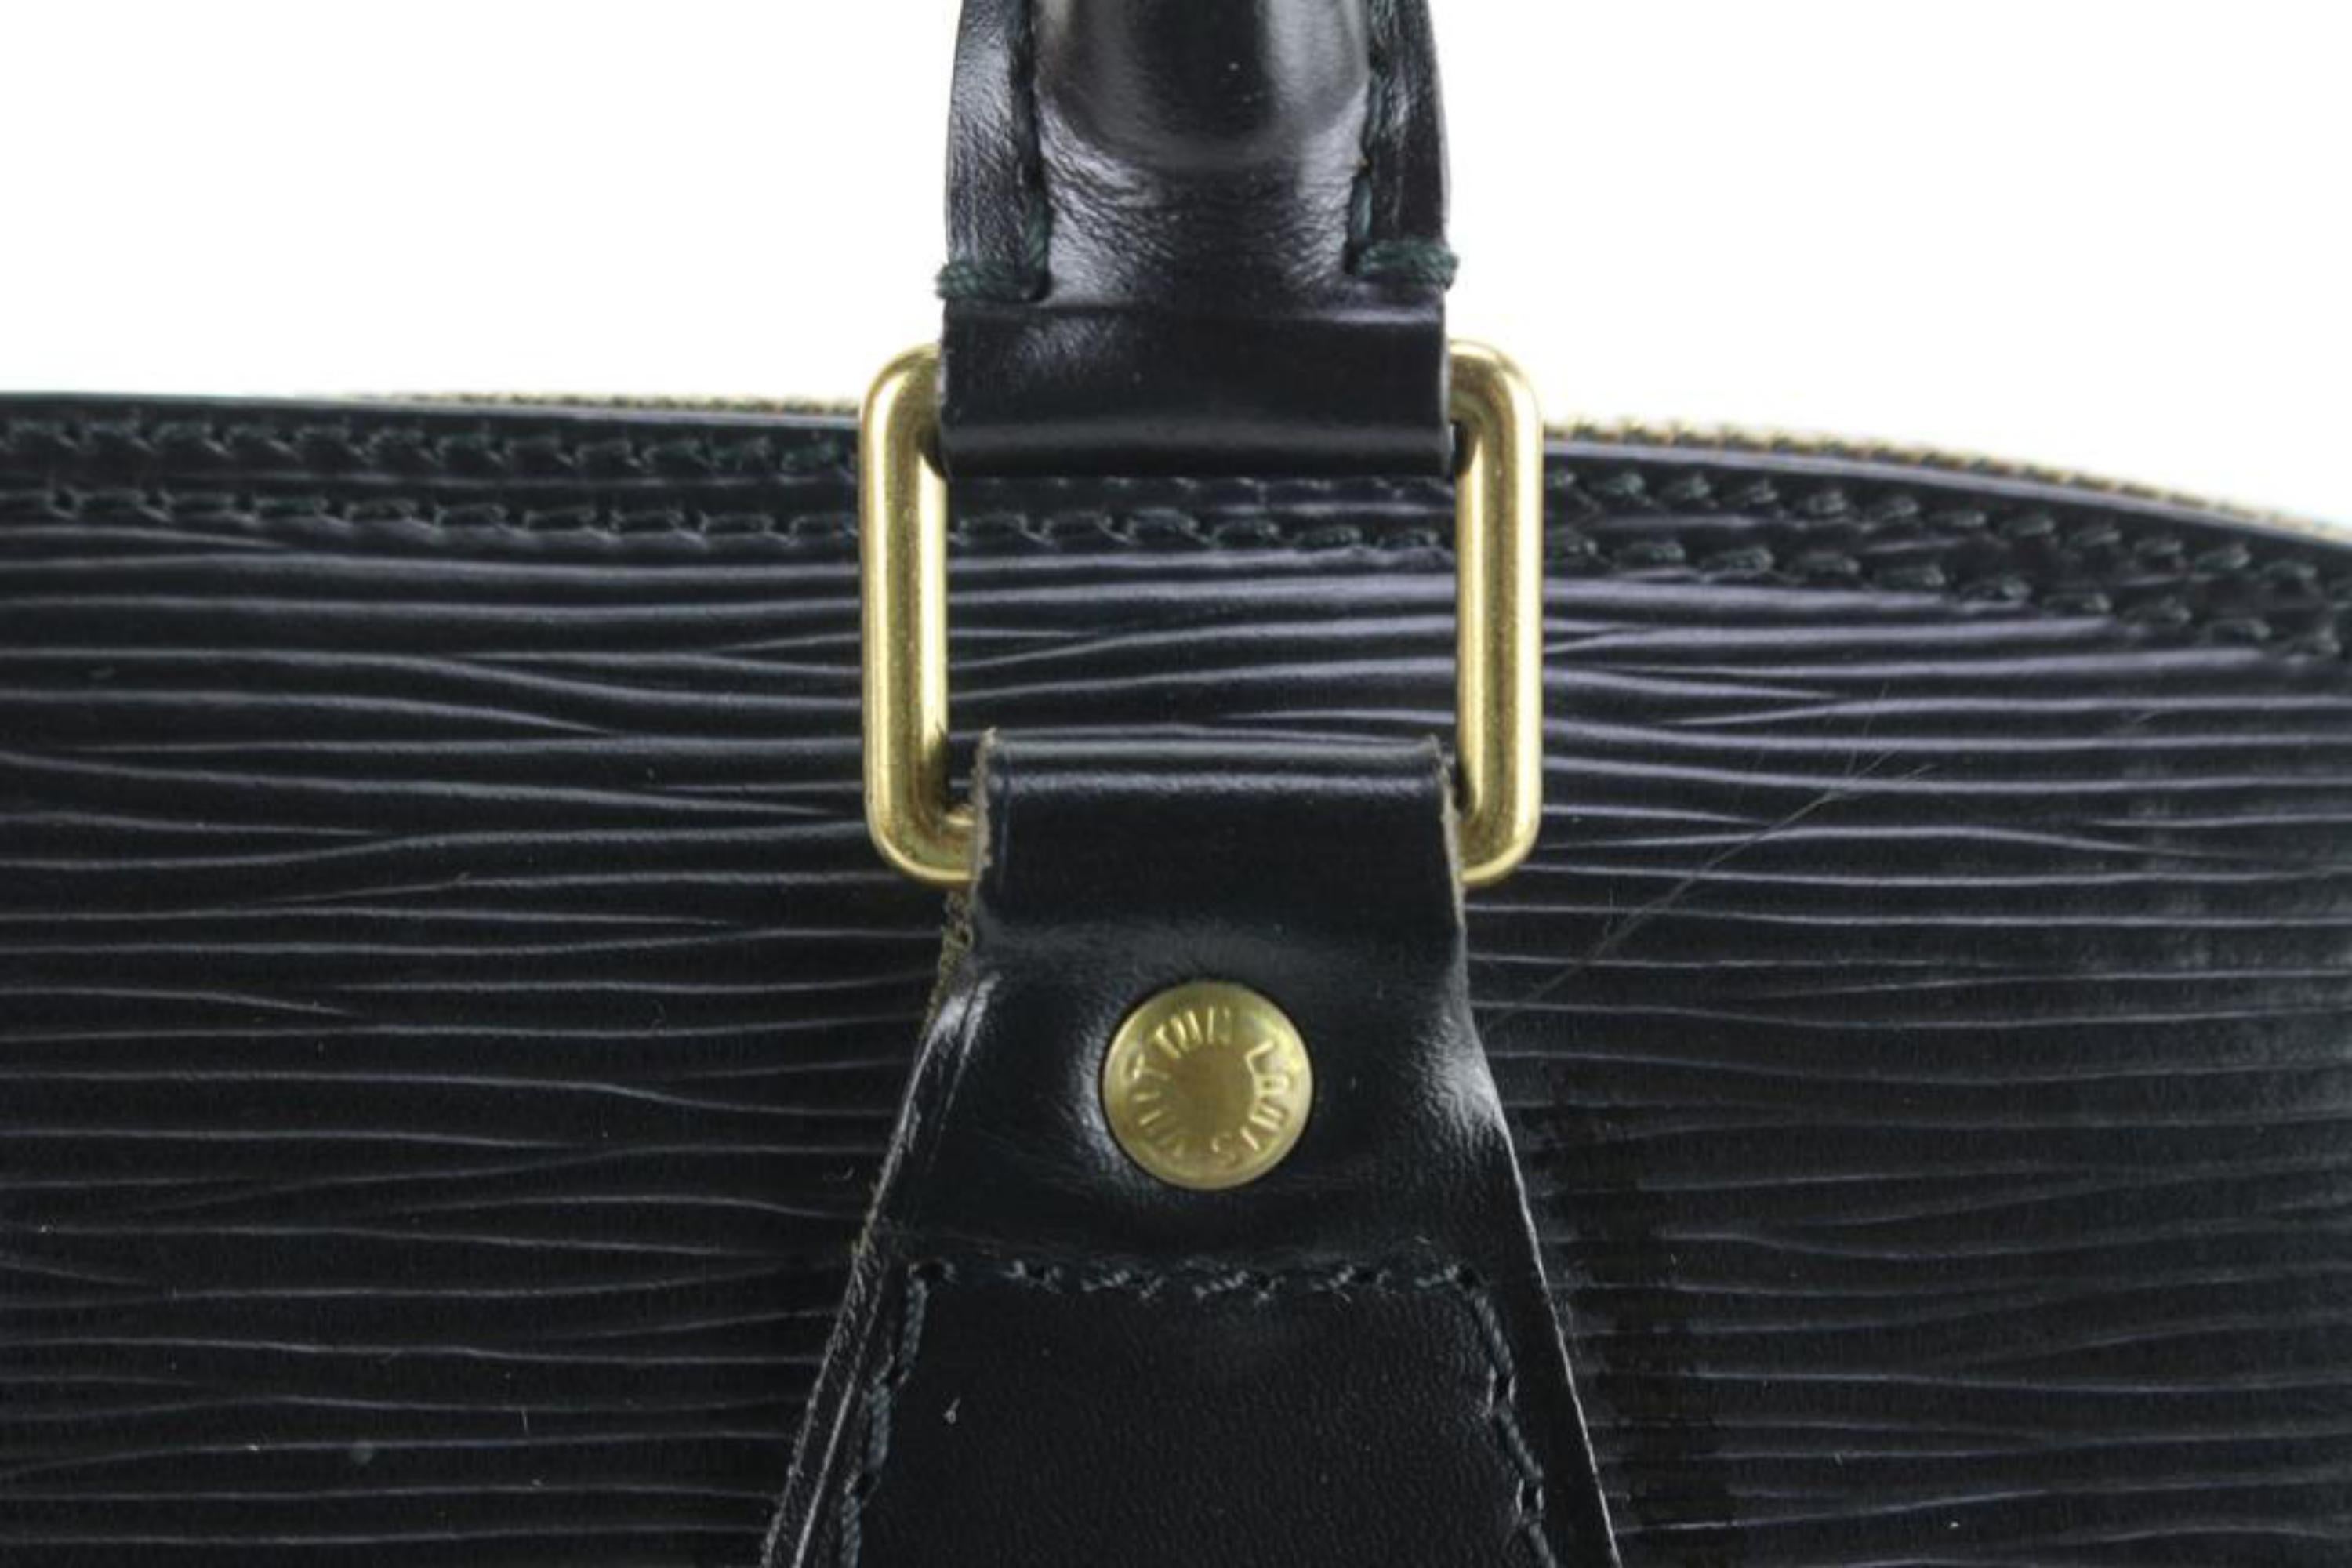 Authenticated Used Louis Vuitton Handbag Alma PM Black Noir Epi